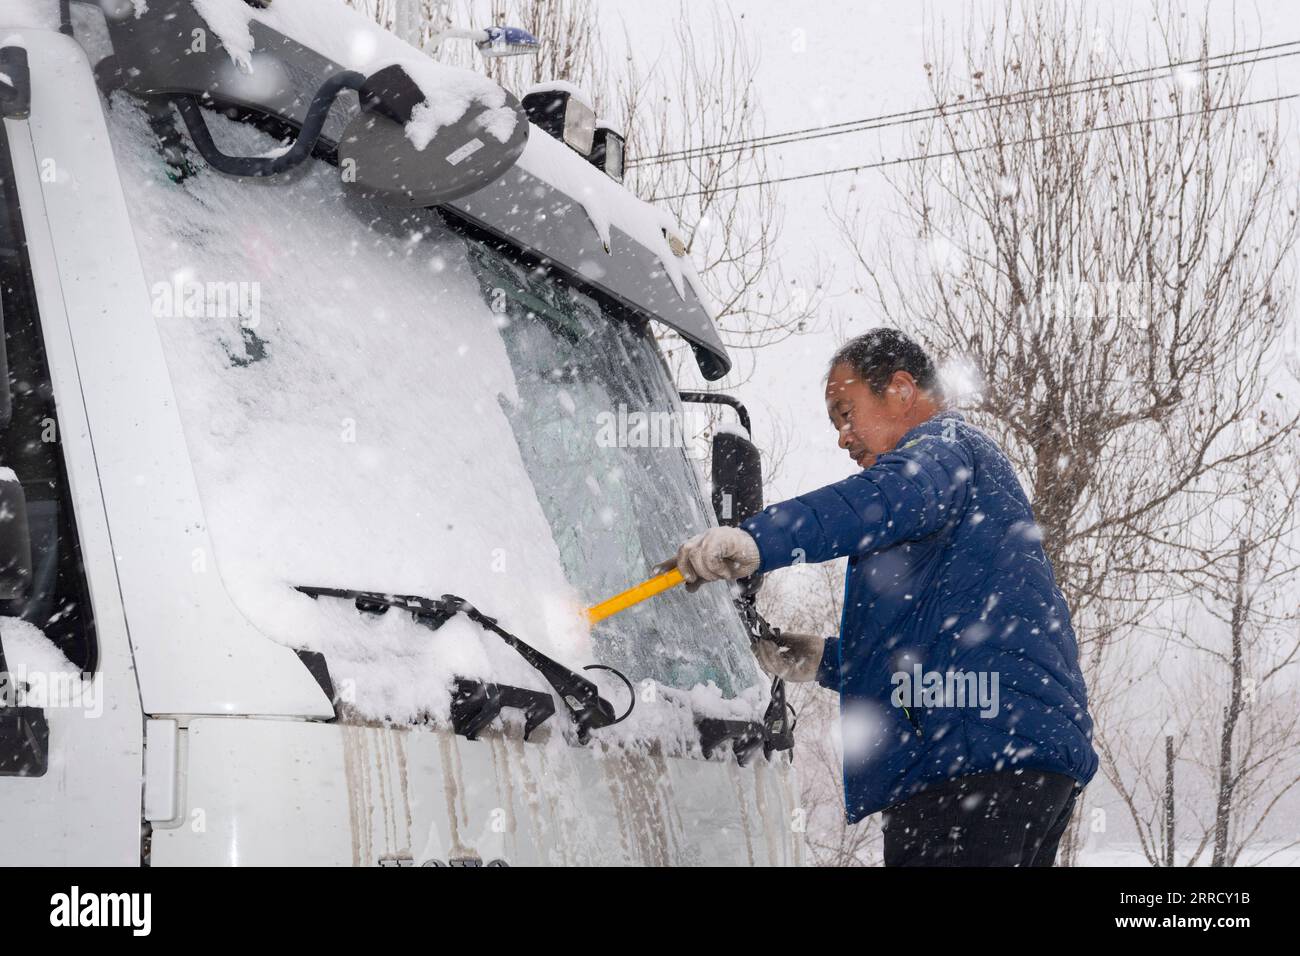 211122 -- HEGANG, 22. November 2021 -- Ein Arbeiter entfernt Schnee vom Windschild eines Schneepfluges in der Stadt Hegang, Provinz Heilongjiang im Nordosten Chinas, 22. November 2021. Schwere Schneefälle trafen in letzter Zeit viele Teile von Heilongjiang. Mitarbeiter verschiedener Sektoren trotzen eisigen Böen und Schneeflocken, um die normale Verfügbarkeit wesentlicher öffentlicher Dienste zu gewährleisten. CHINA-HEILONGJIANG-BLIZZARD CN XiexJianfei PUBLICATIONxNOTxINxCHN Stockfoto